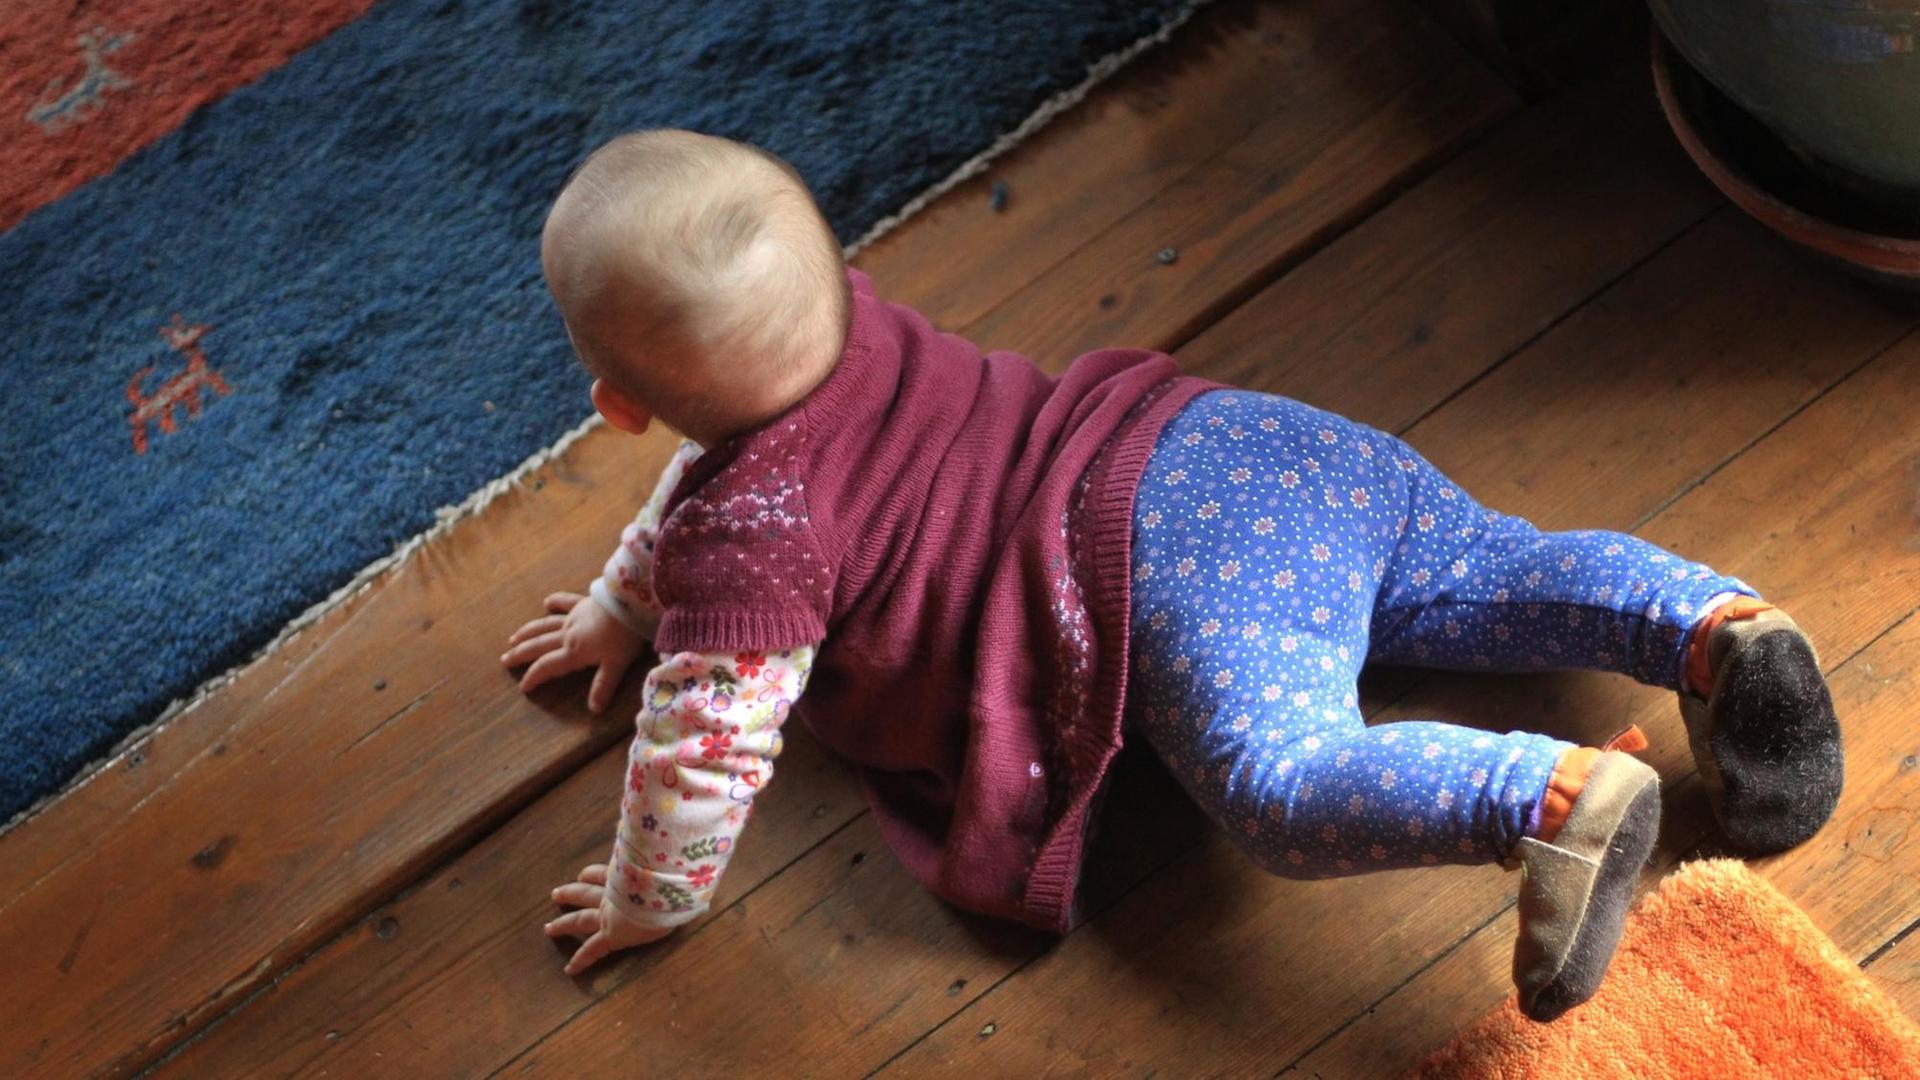 Ein acht Monate altes Baby krabbelt am auf einem Holzboden. Es hat eine blaue Hose und ein rotes T-shirt an.